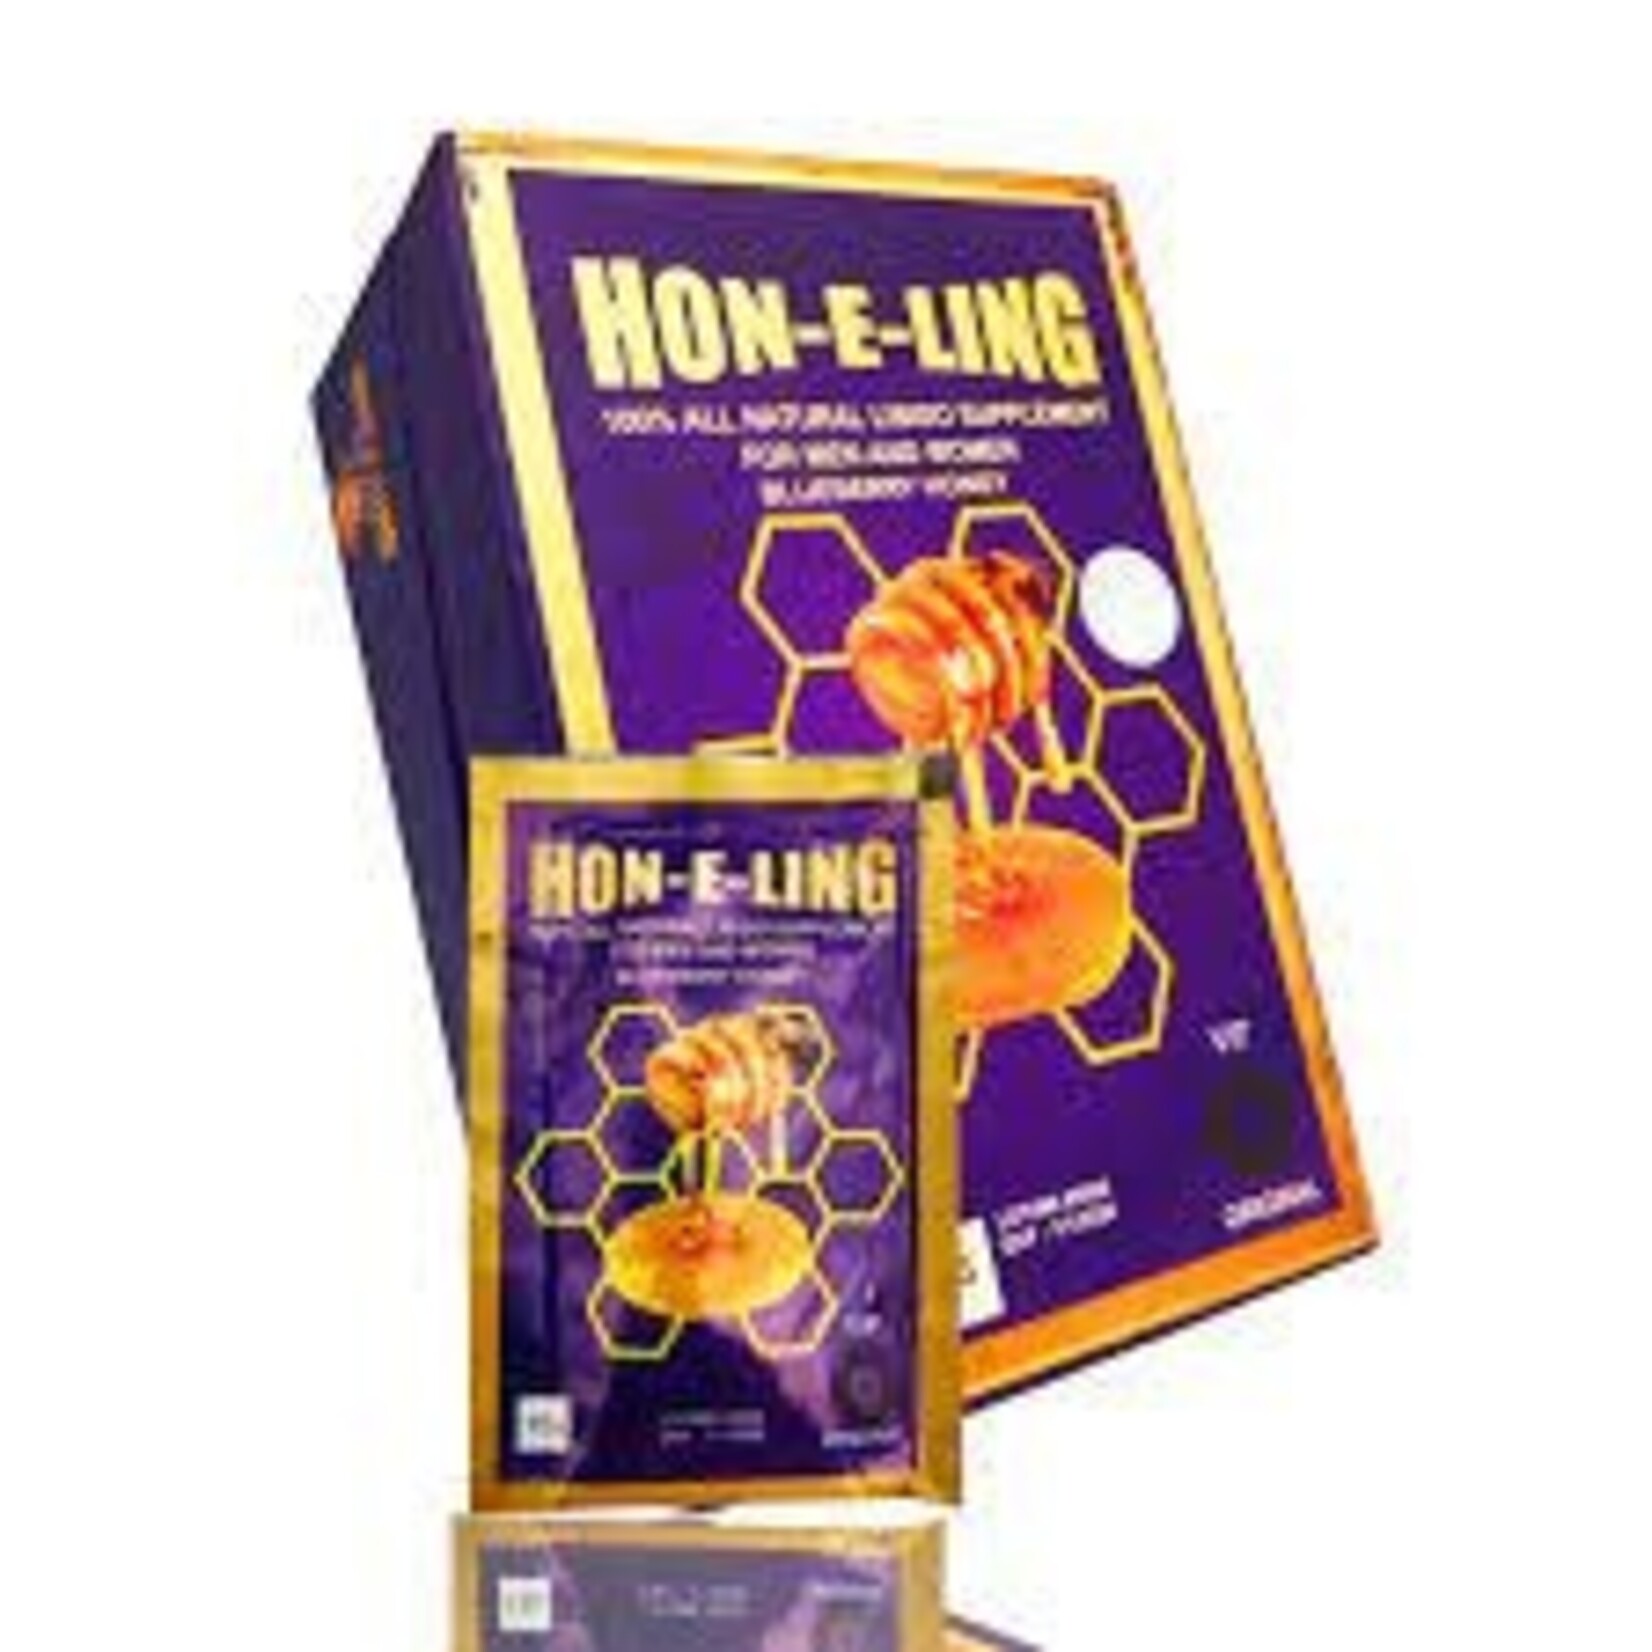 HON-E_LING HON-E-LING Sachets